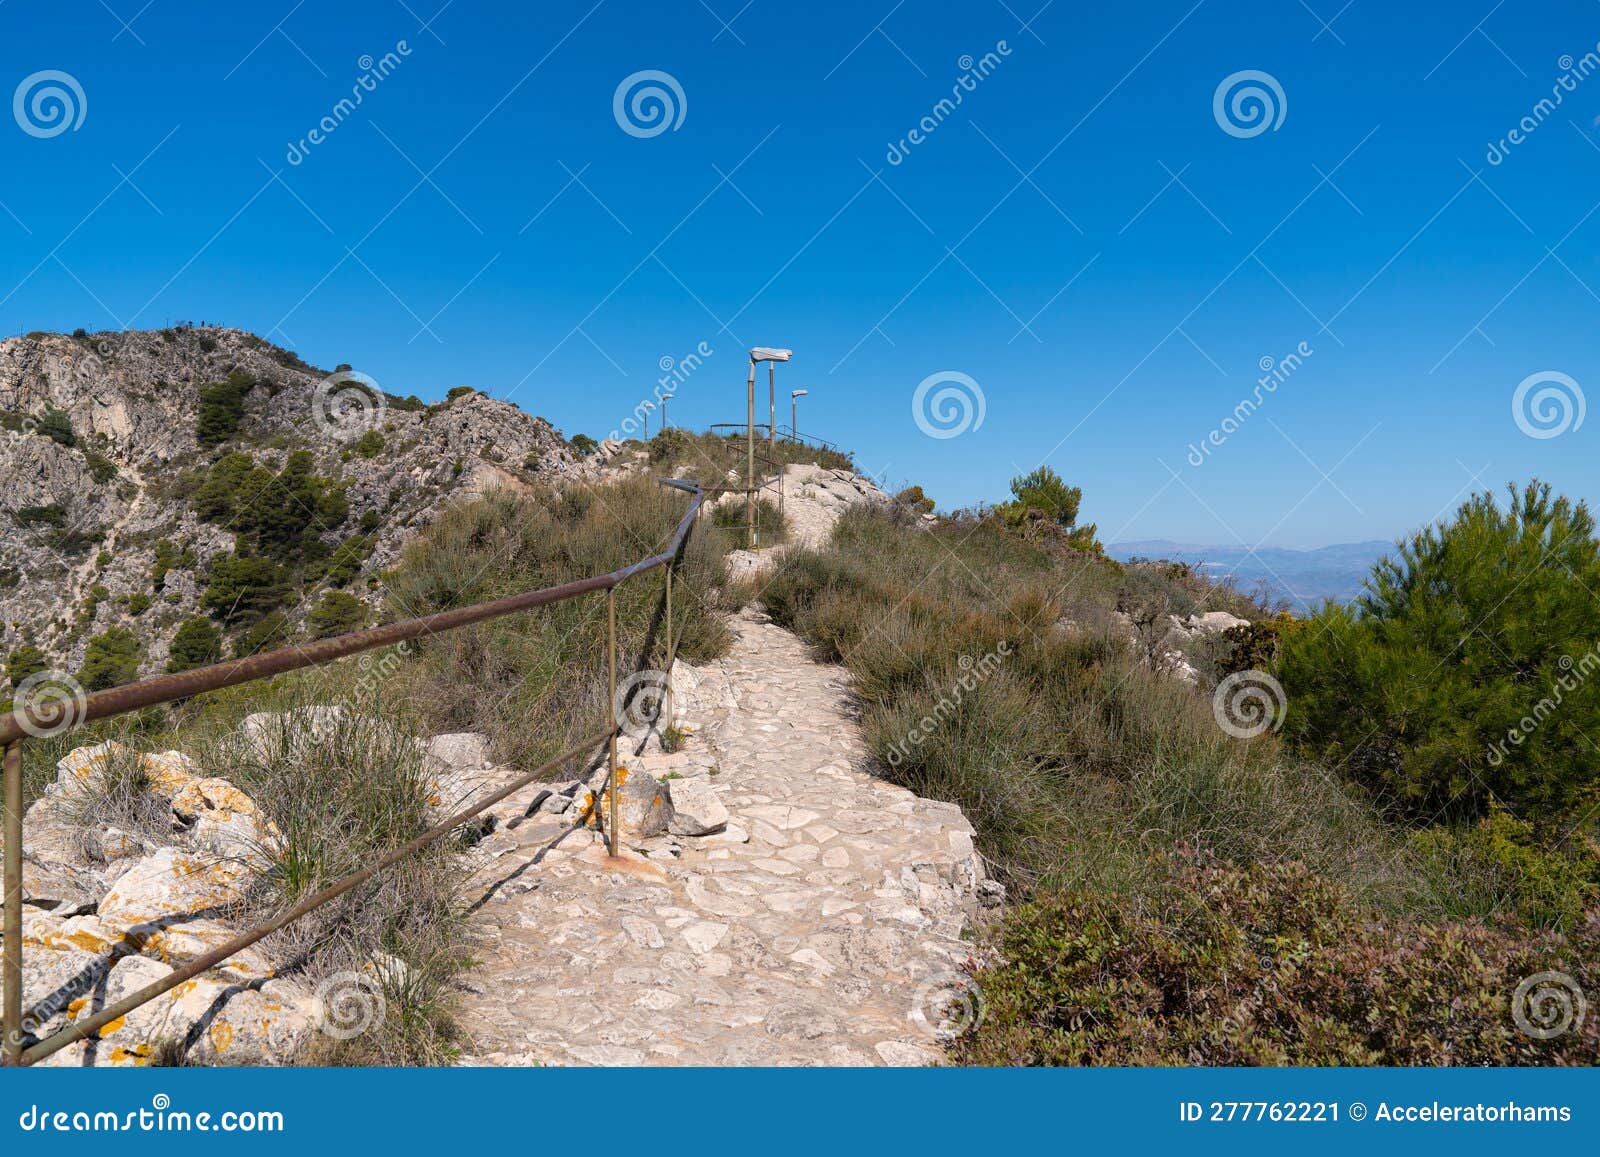 mountain paths on monte calamorro benalmadena spain